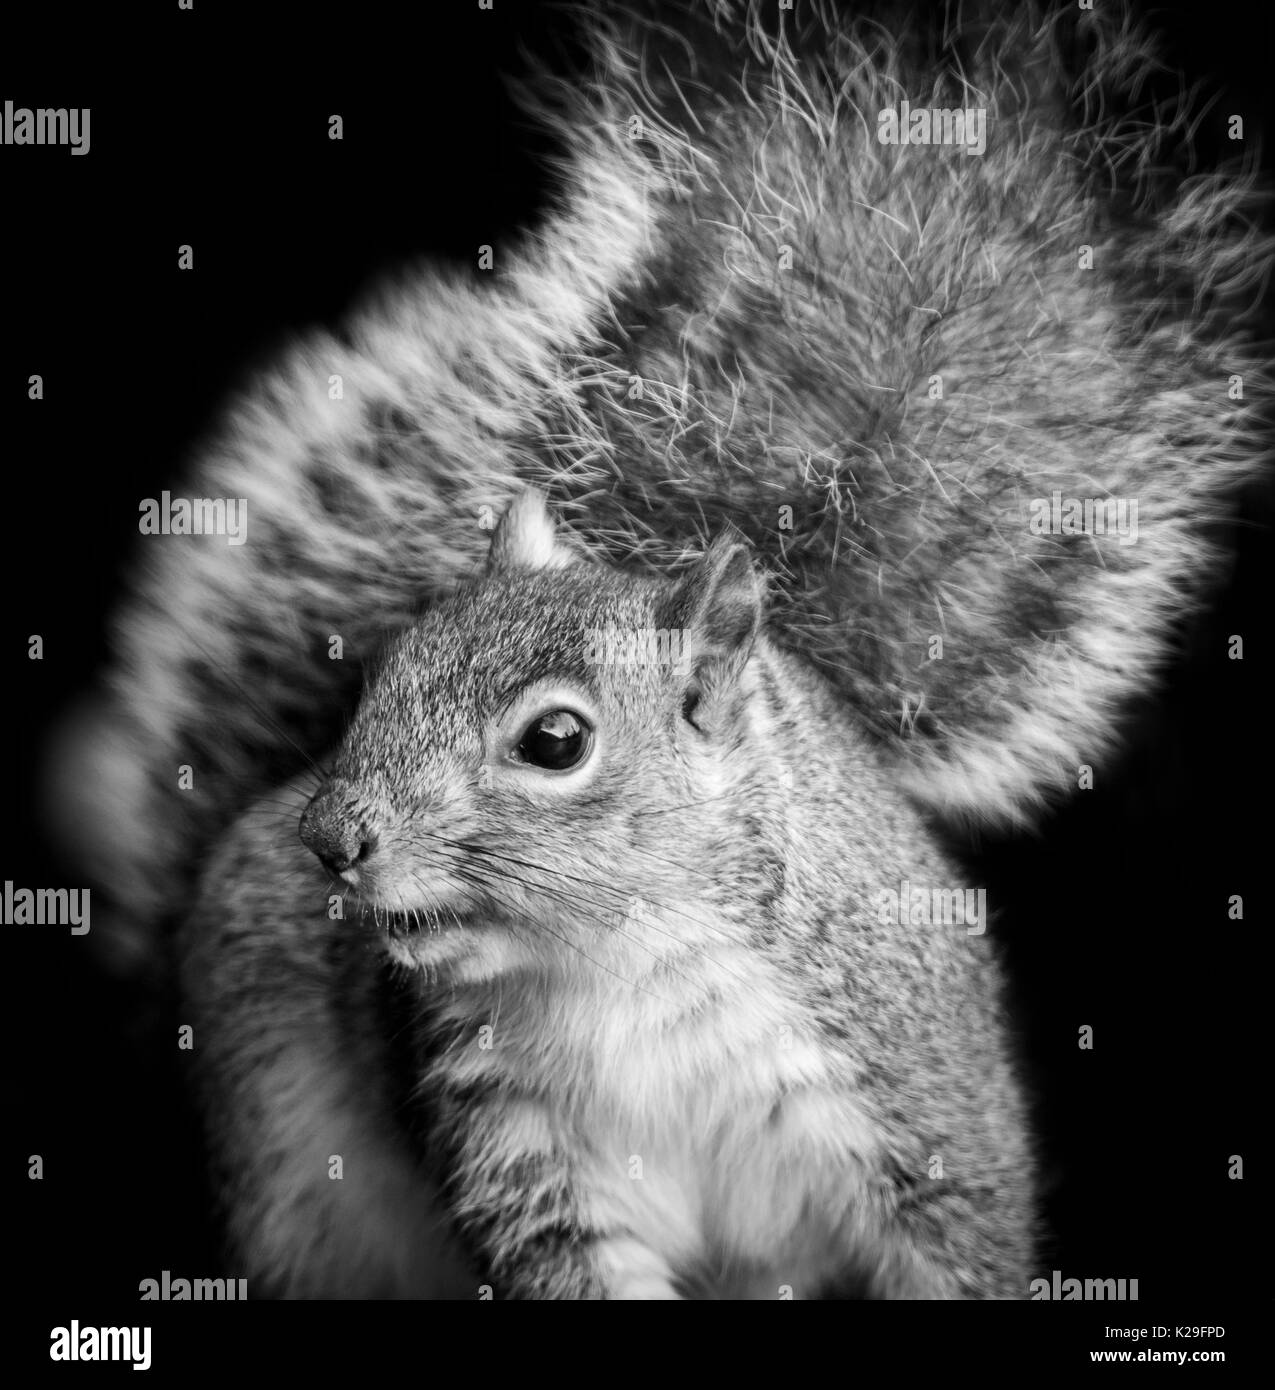 Nahaufnahme von einem grauen Eichhörnchen, oder American Grey squirrel, Sciurus carolinensis, eine niedliche Nagetier, die von einer gemeinsamen Garten Schädlingsbekämpfung in England, Großbritannien Stockfoto